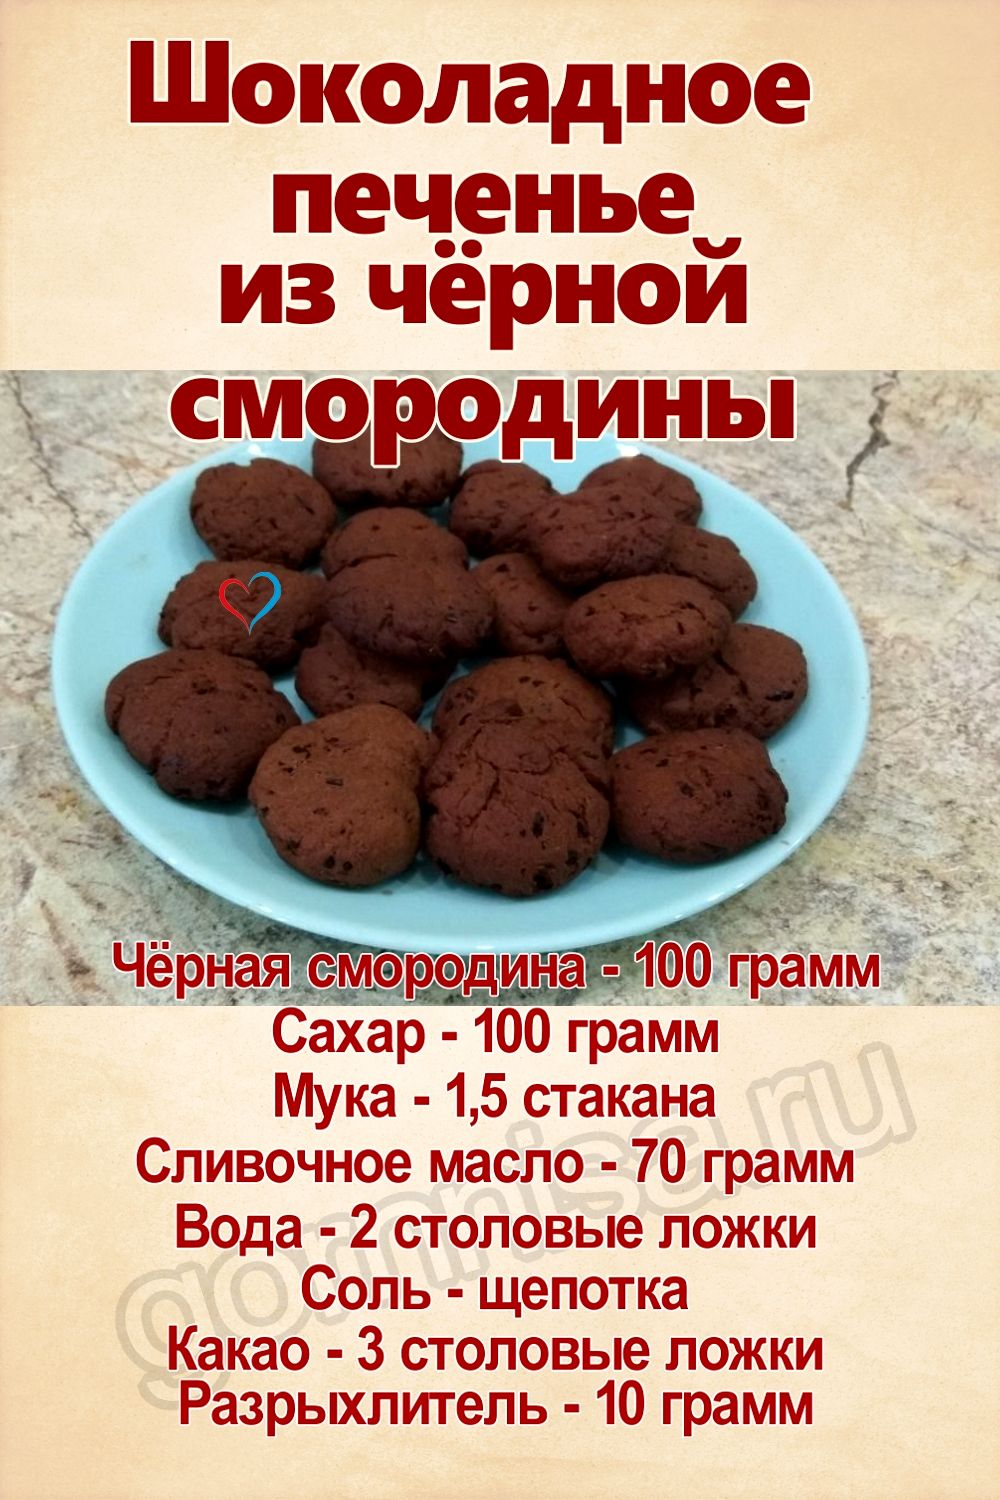 Рецепт недели - Шоколадное печенье из чёрной смородины